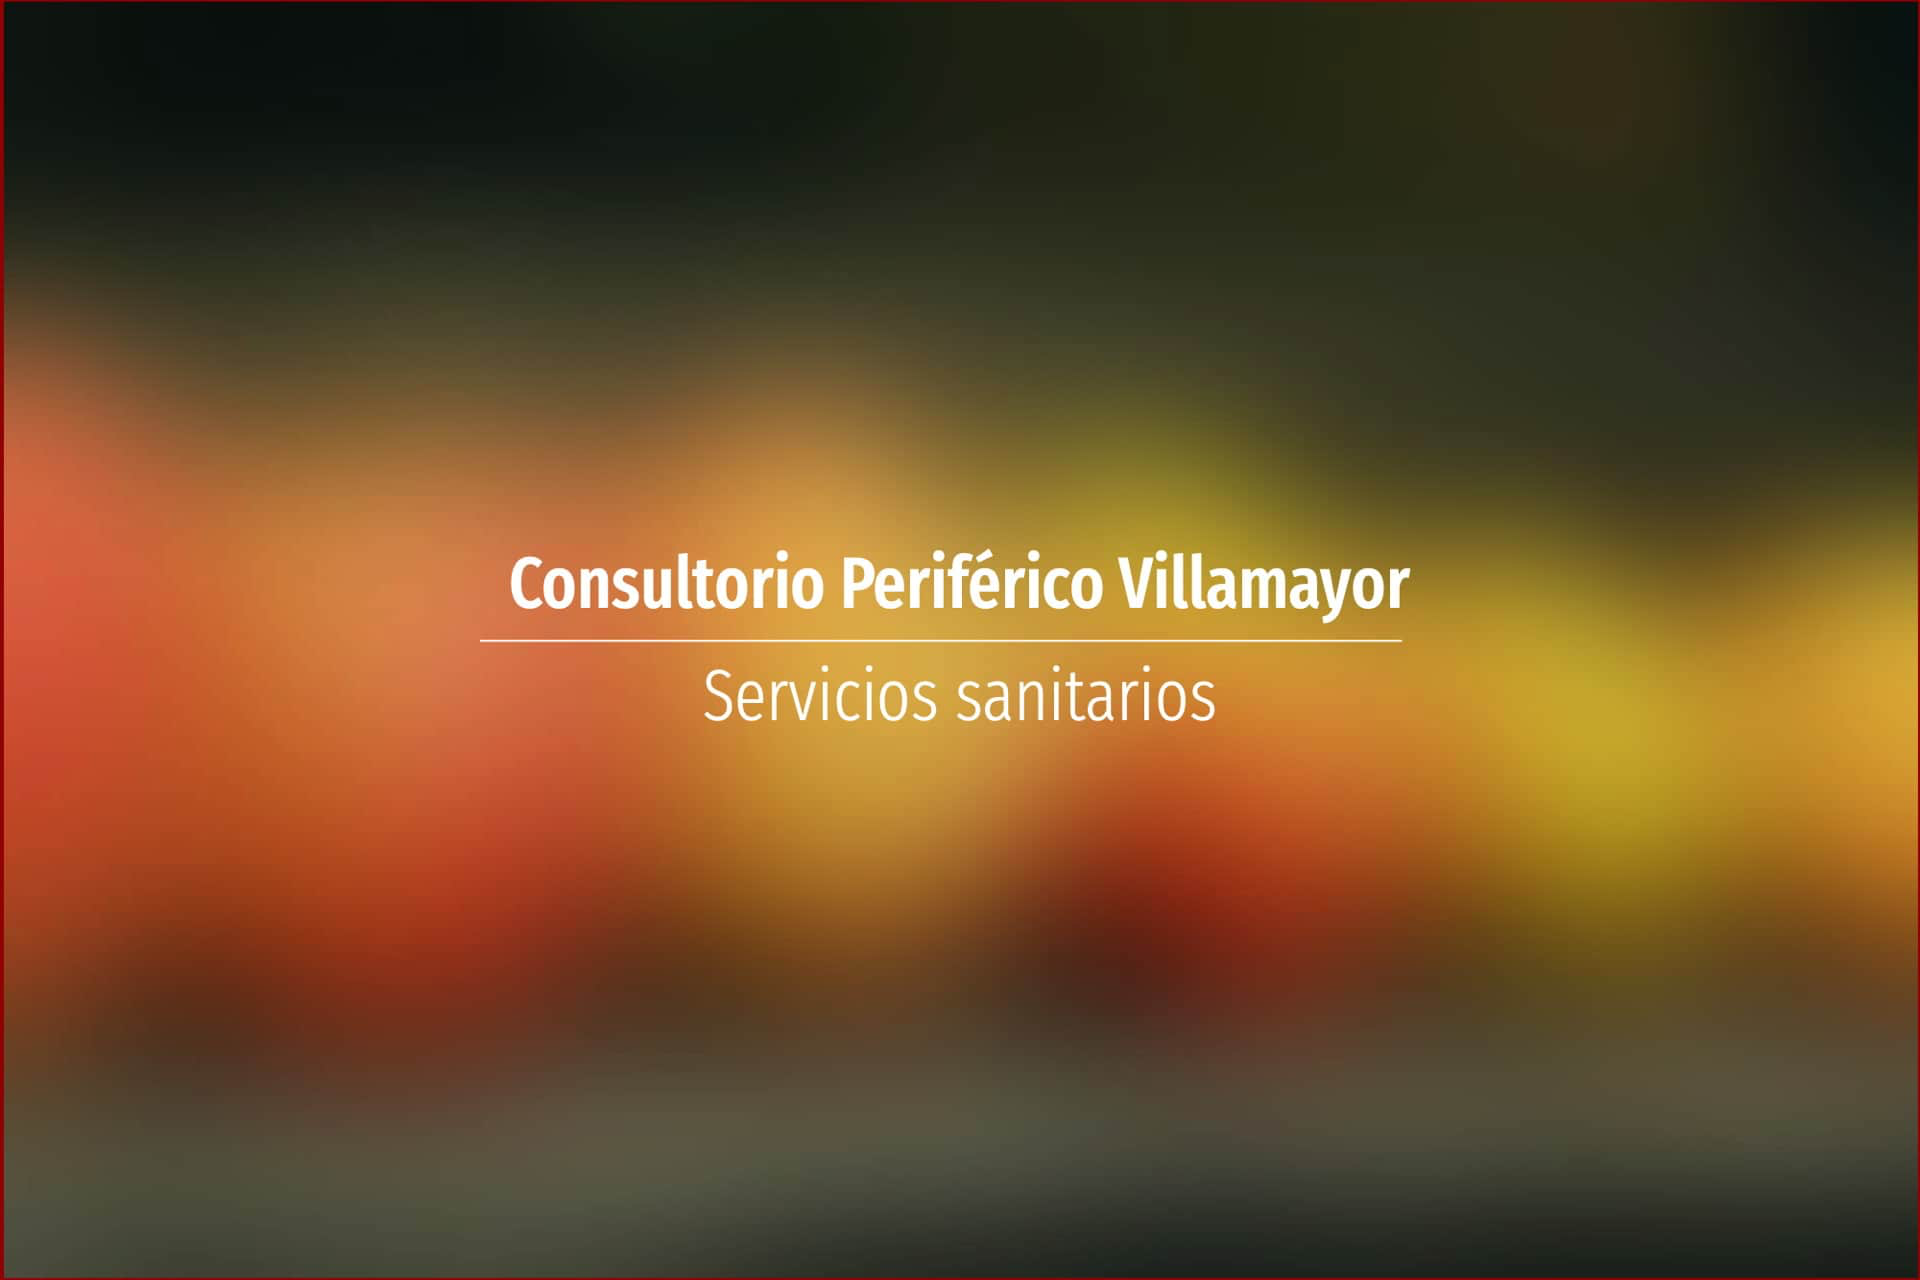 Consultorio Periférico Villamayor